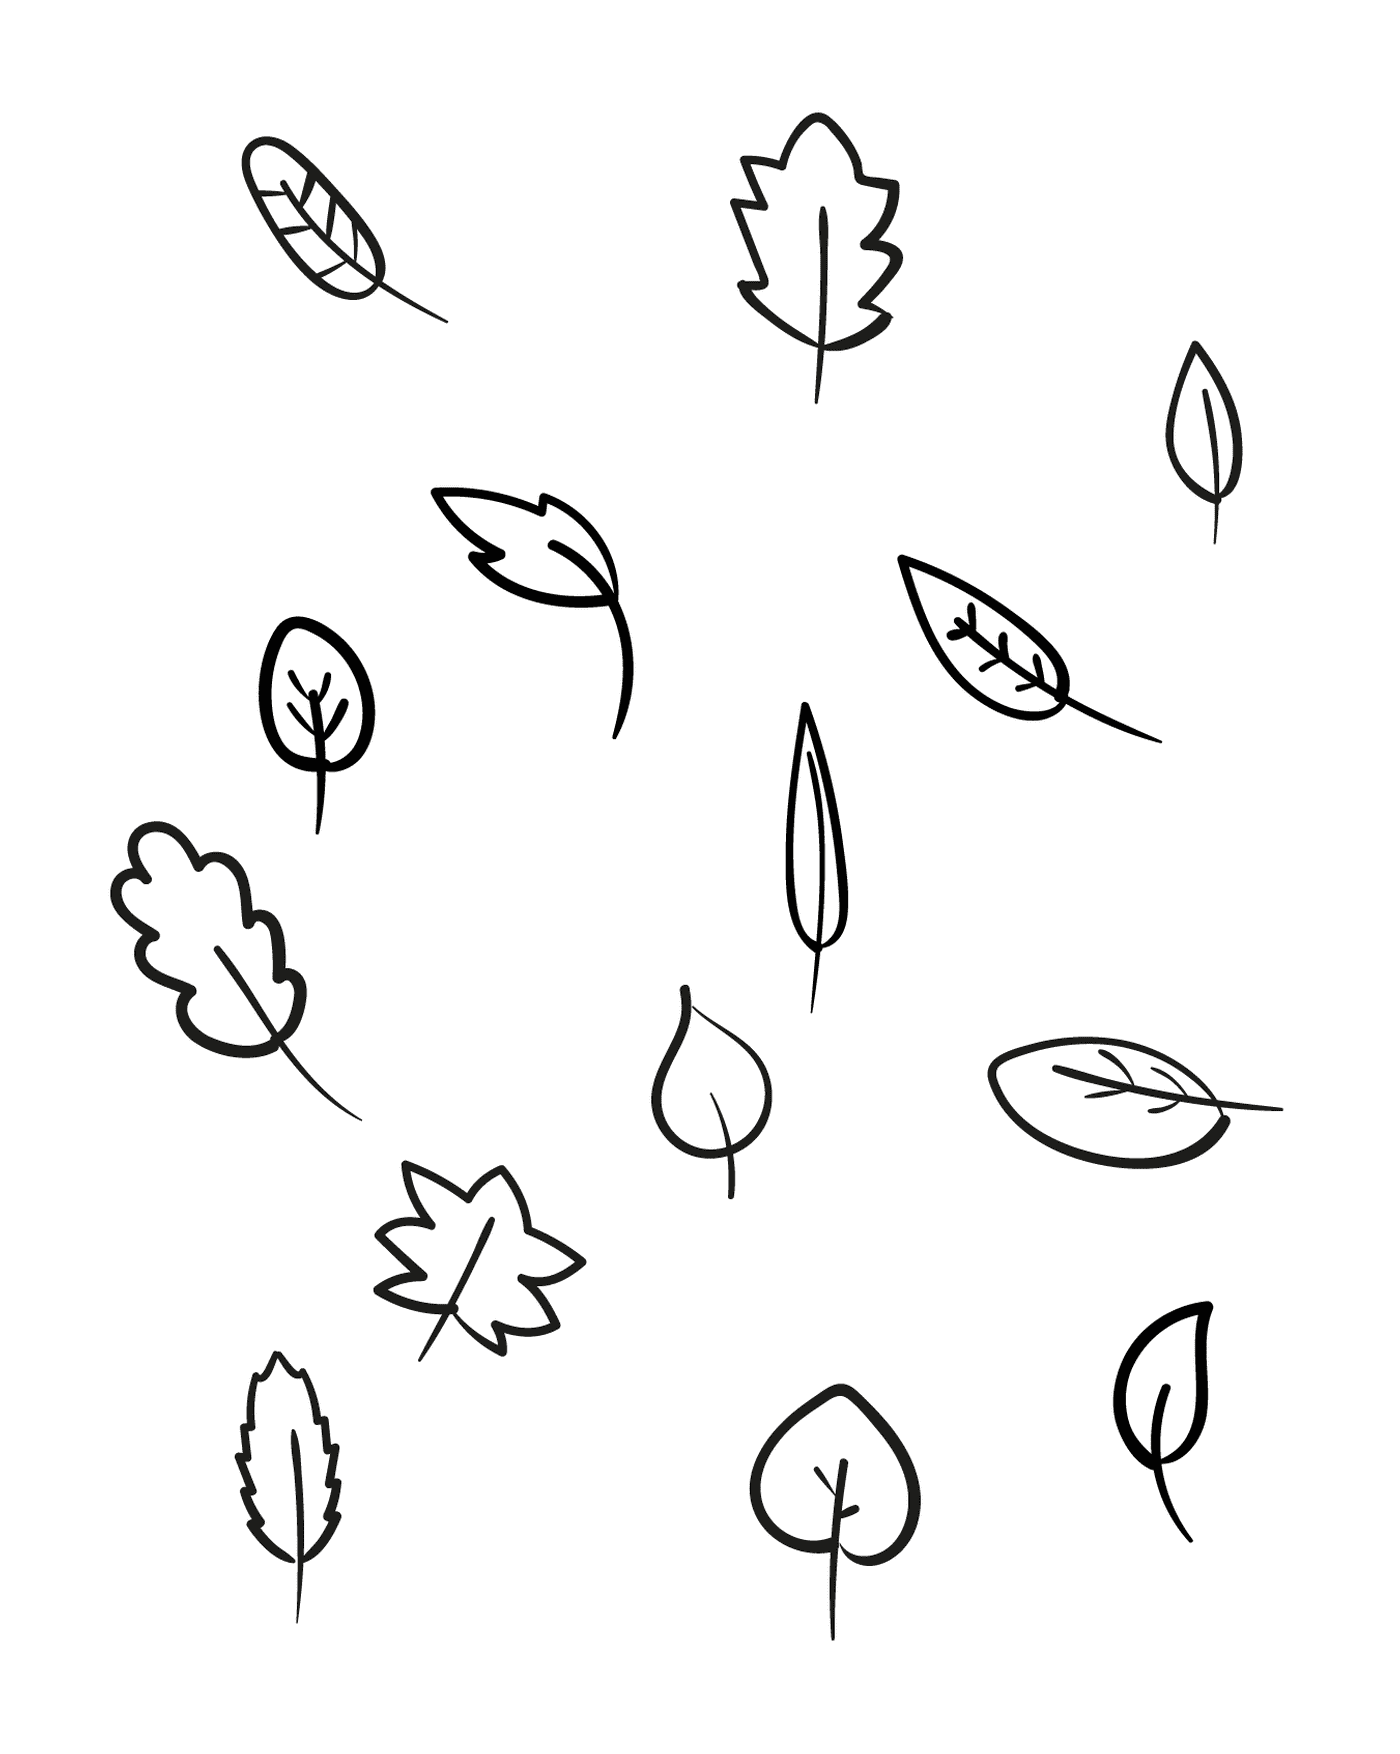   Plusieurs feuilles différentes dessinées à l'encre noire 